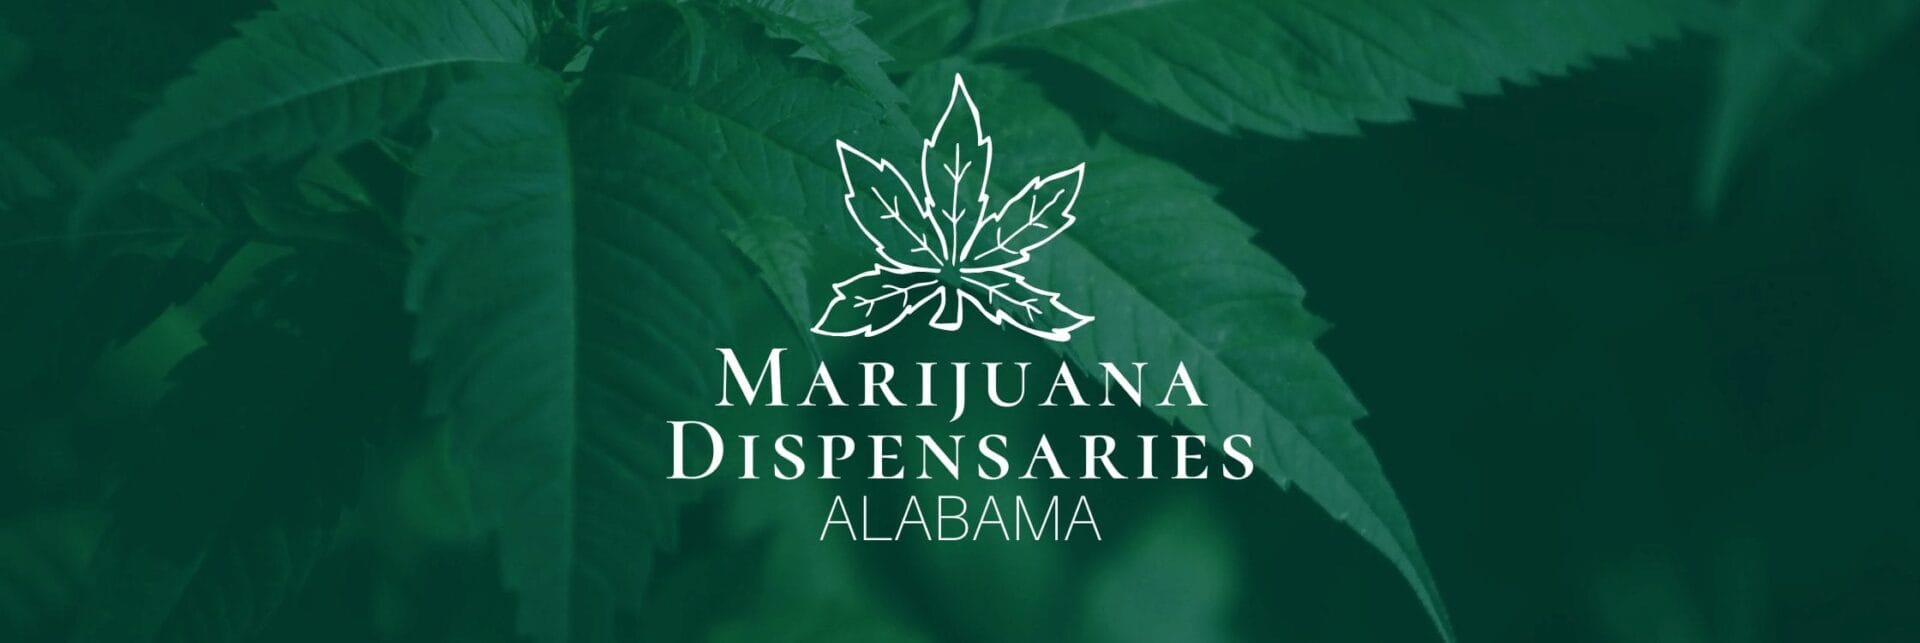 Marijuana Dispensaries in Alabama